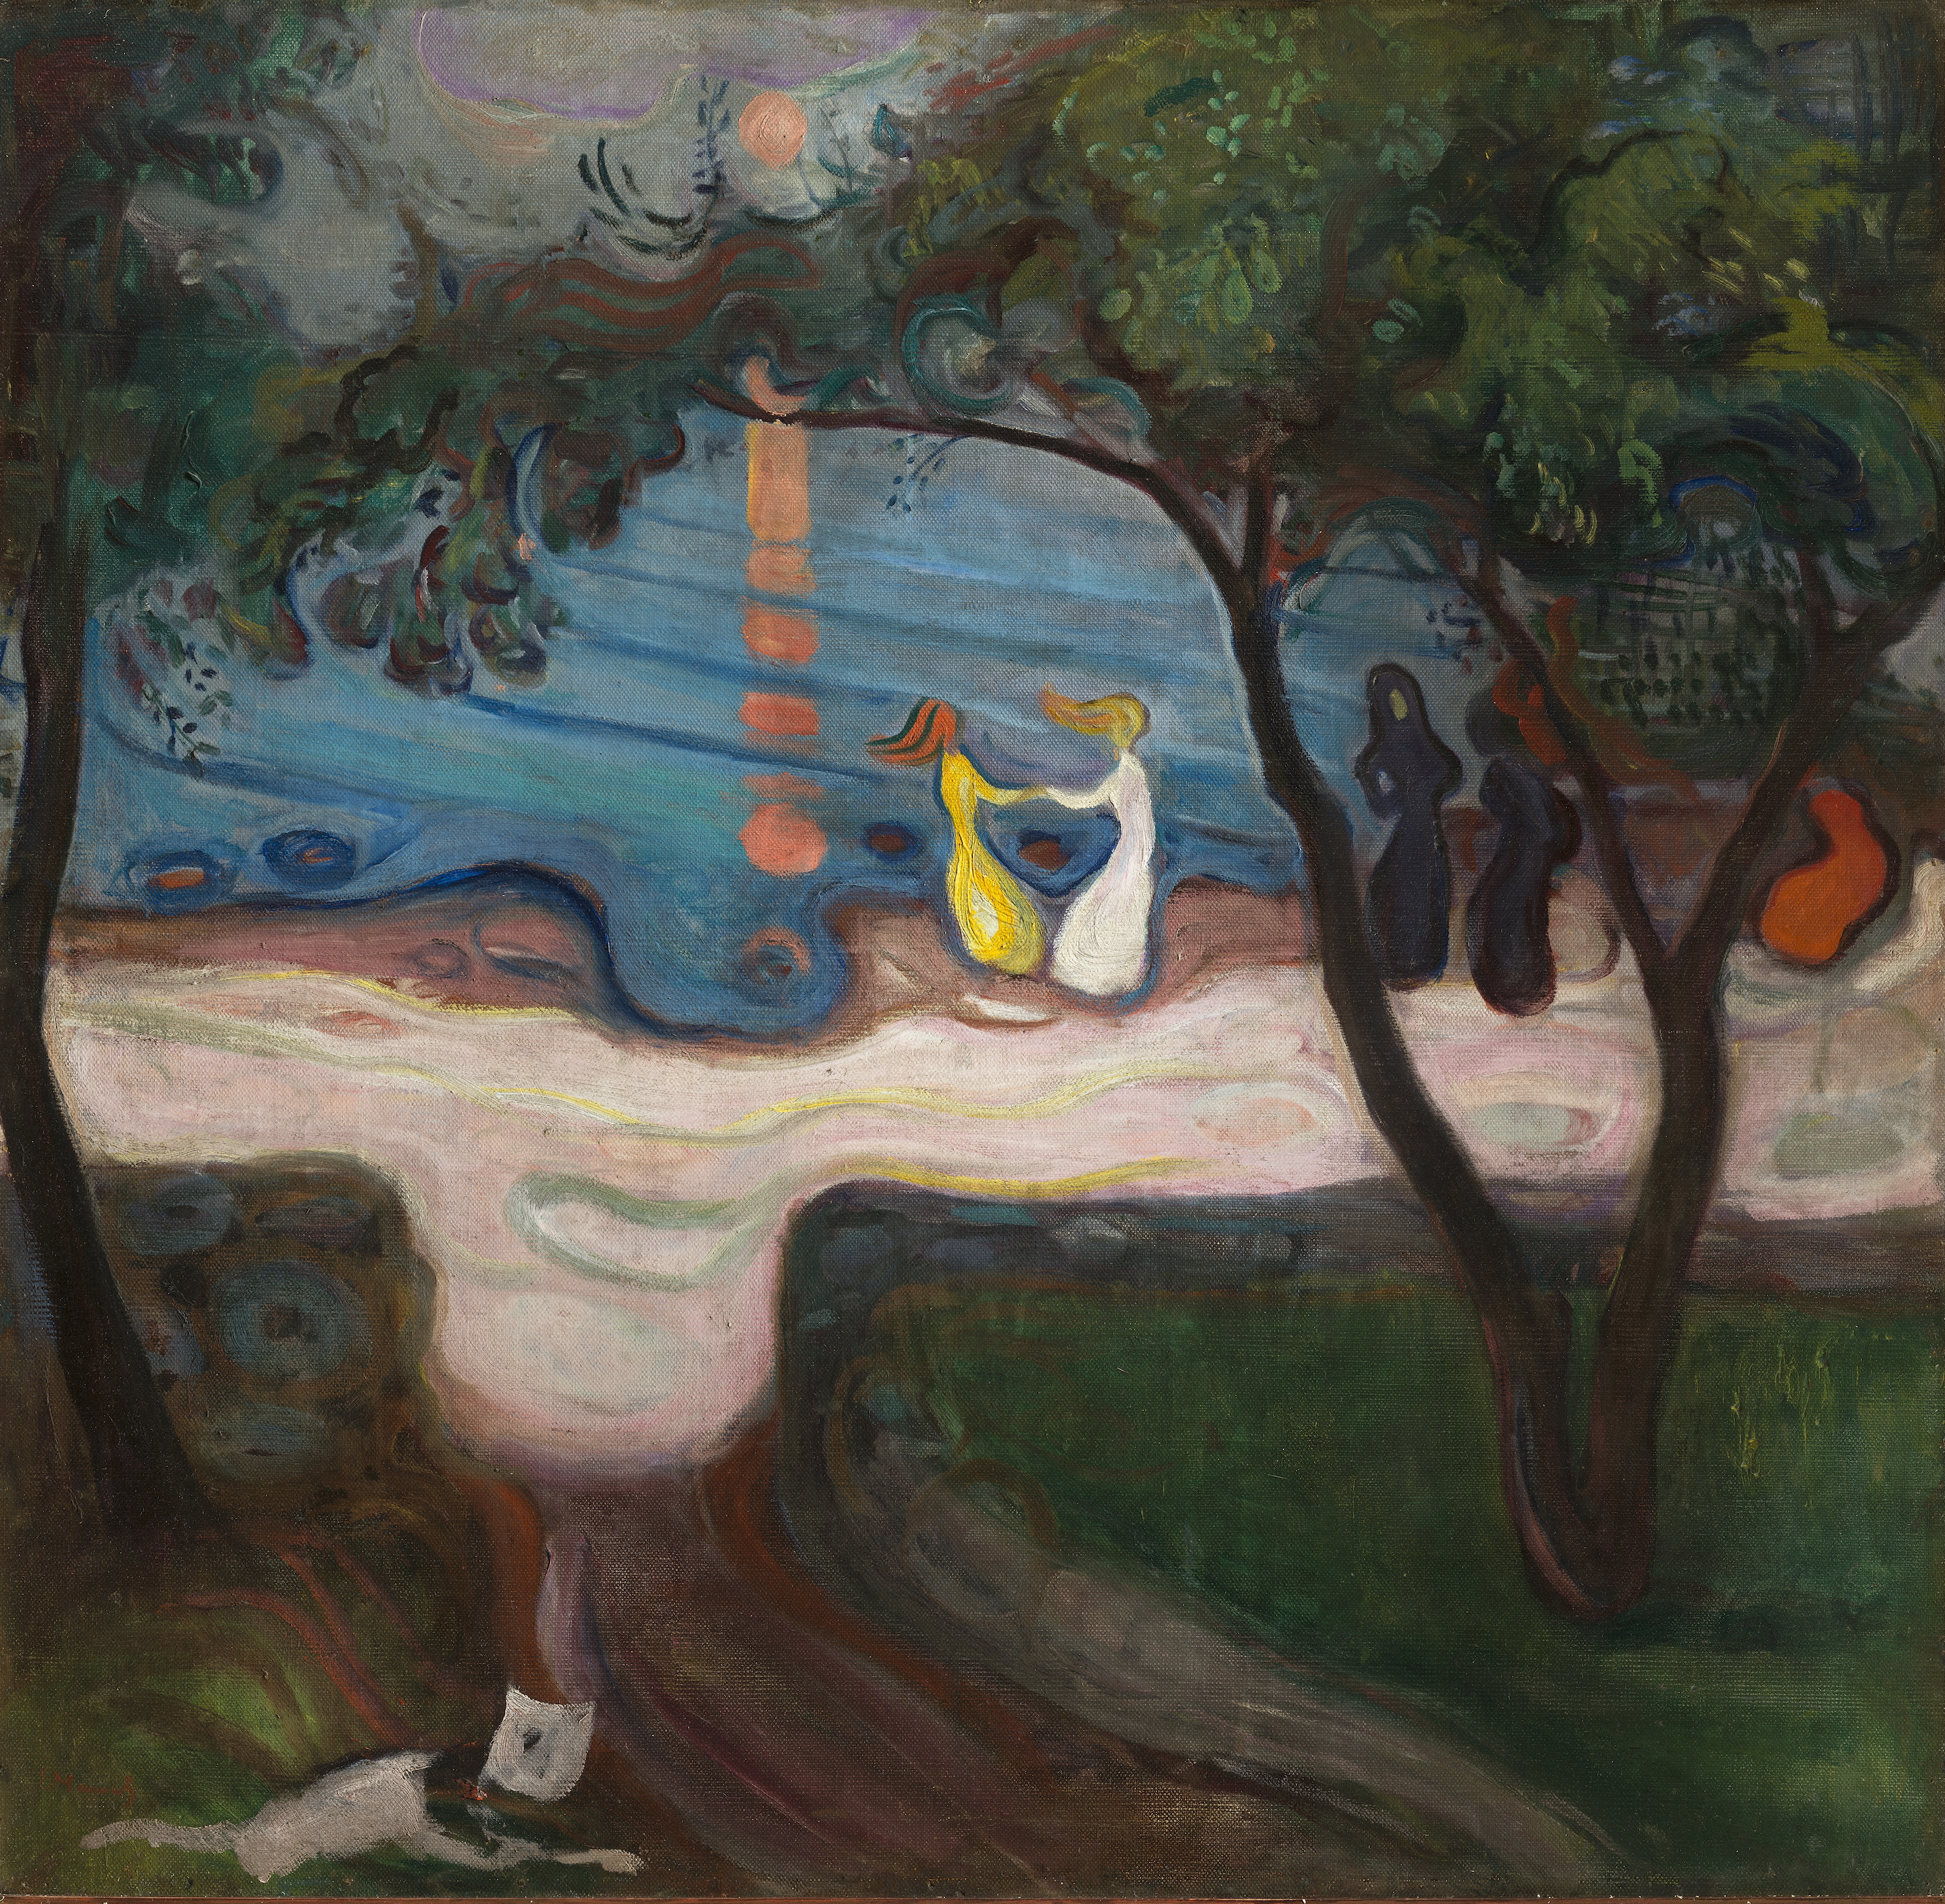 岸邊的舞蹈 by Edvard Munch - 1900 - 95.5 x 98.5 cm 